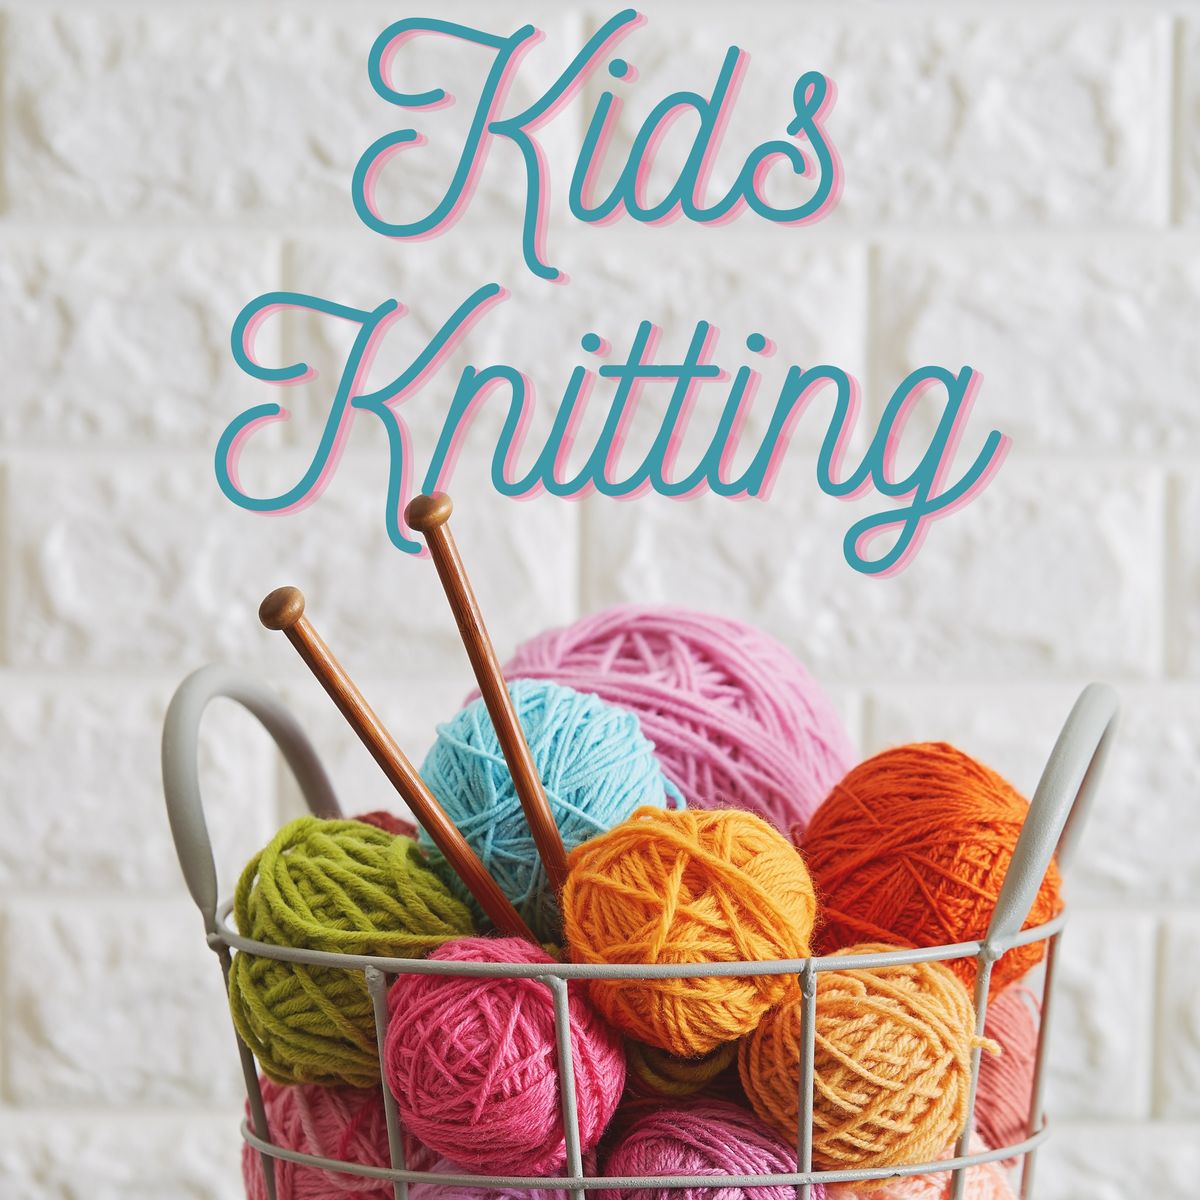 Knitting for Kids